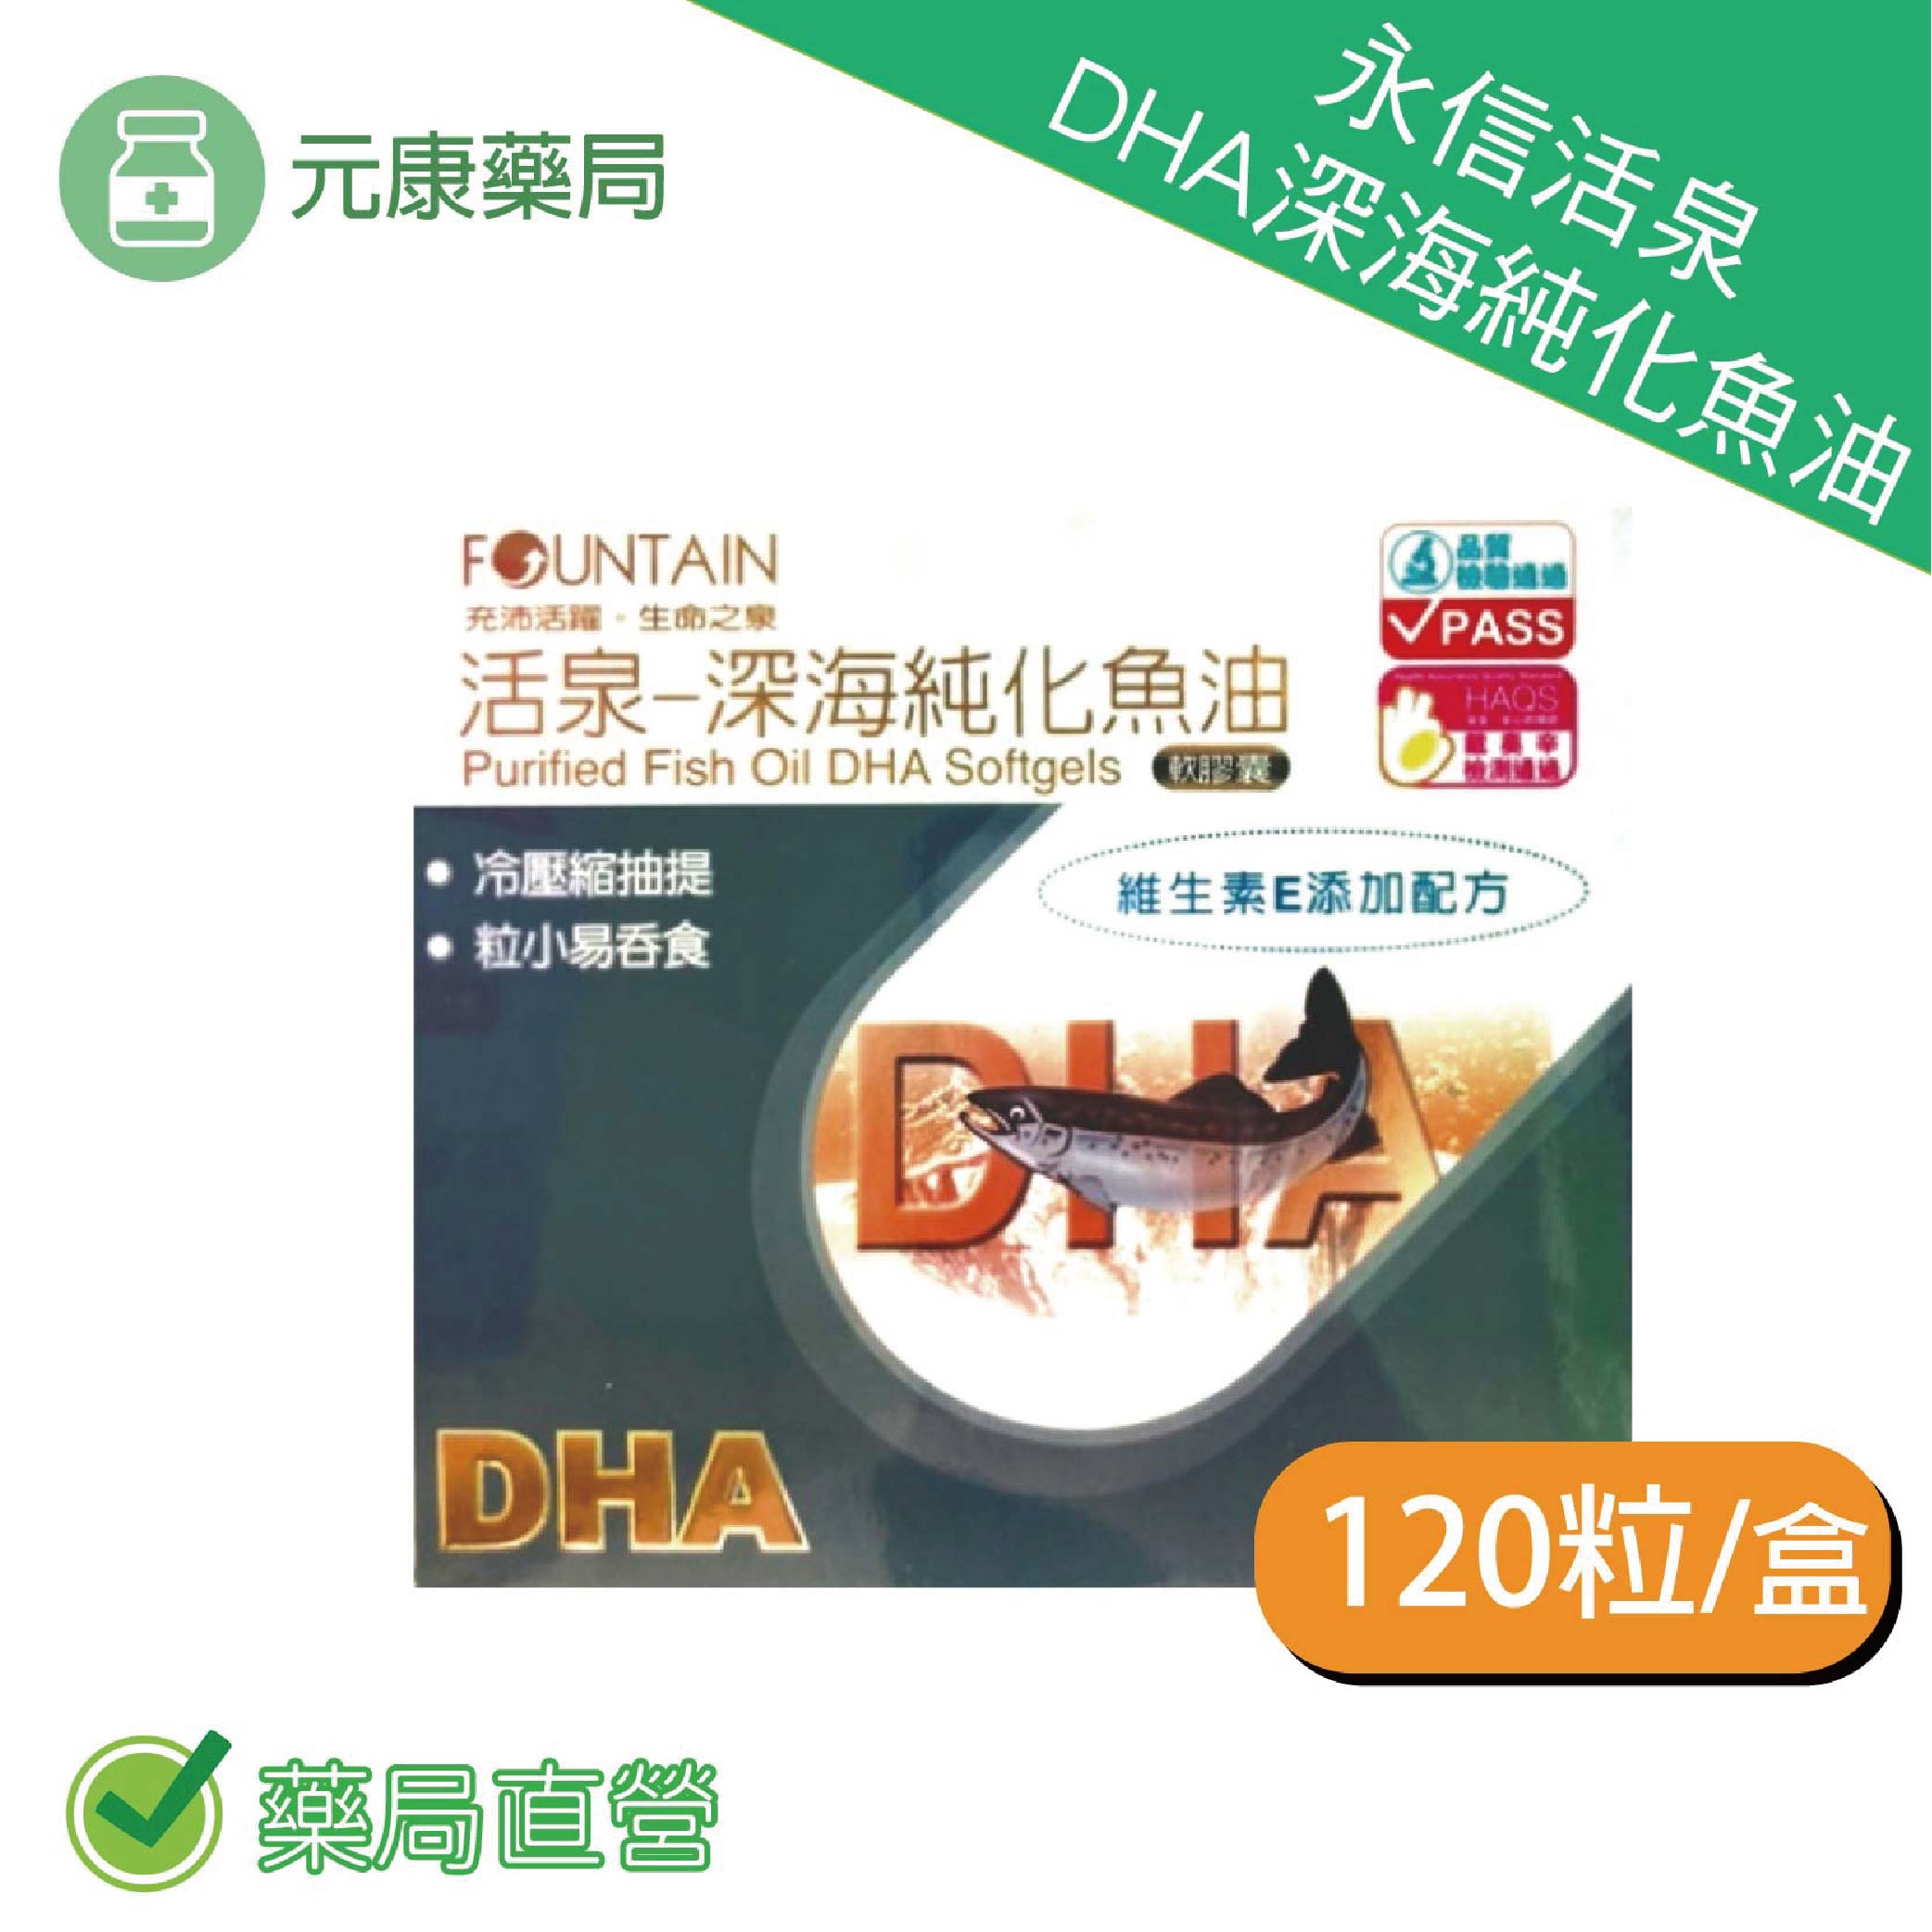 永信活泉DHA深海純化魚油 120粒/盒 DHA EPA 魚油 維生素E